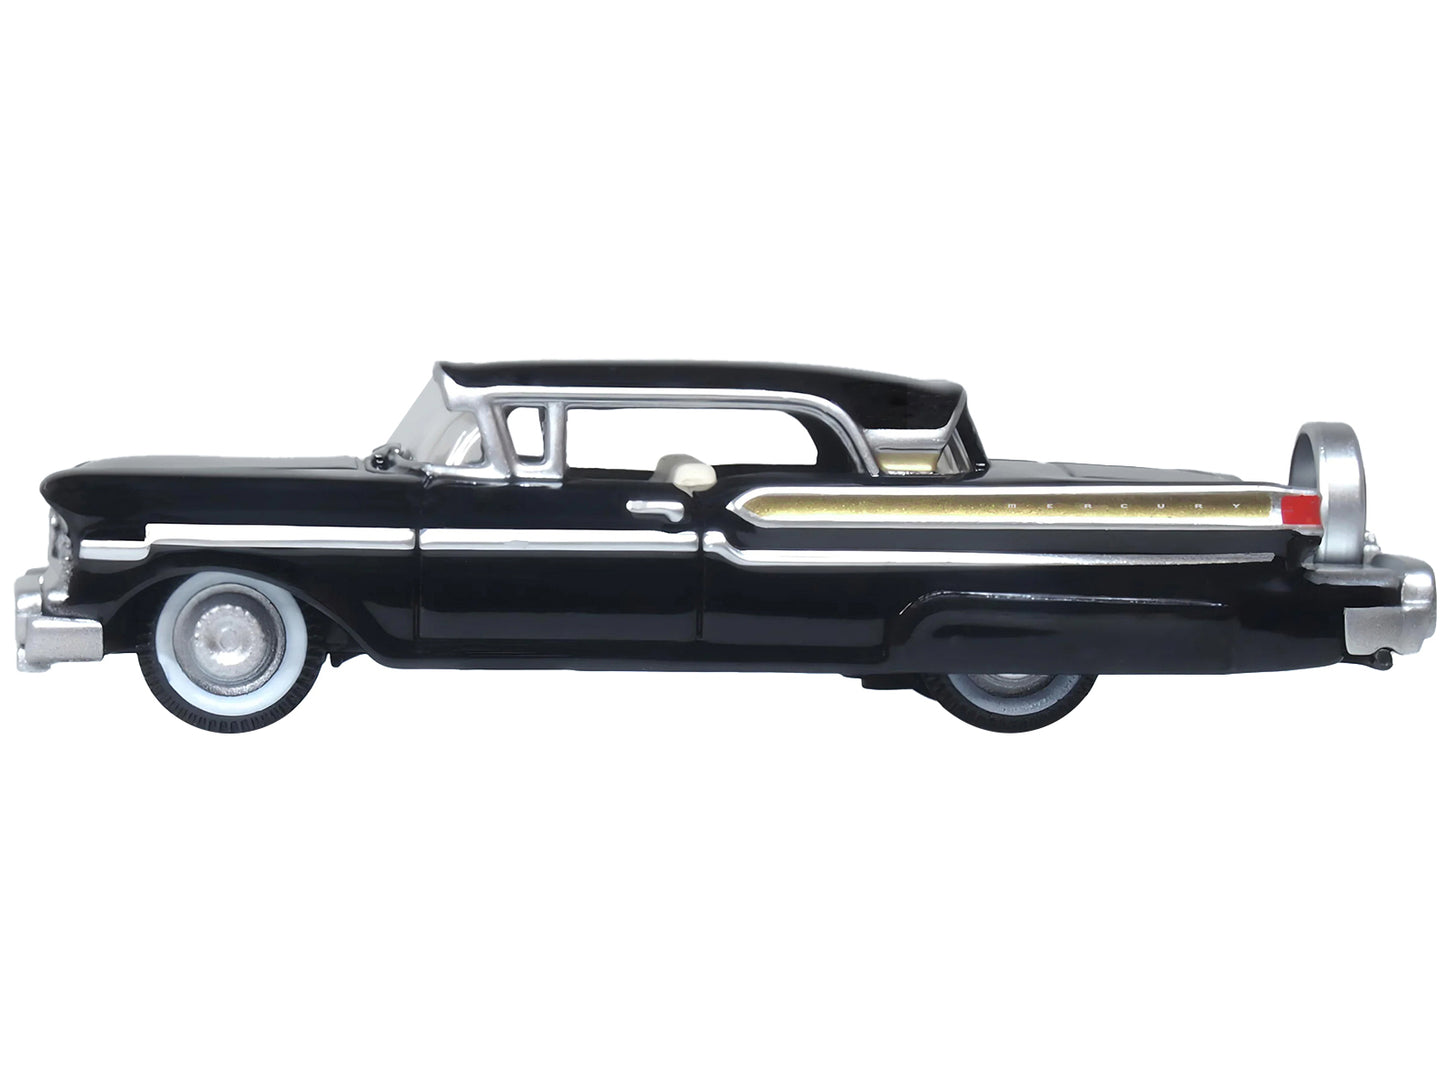 1957 Mercury Montclair Tuxedo Black Diecast Model Car 